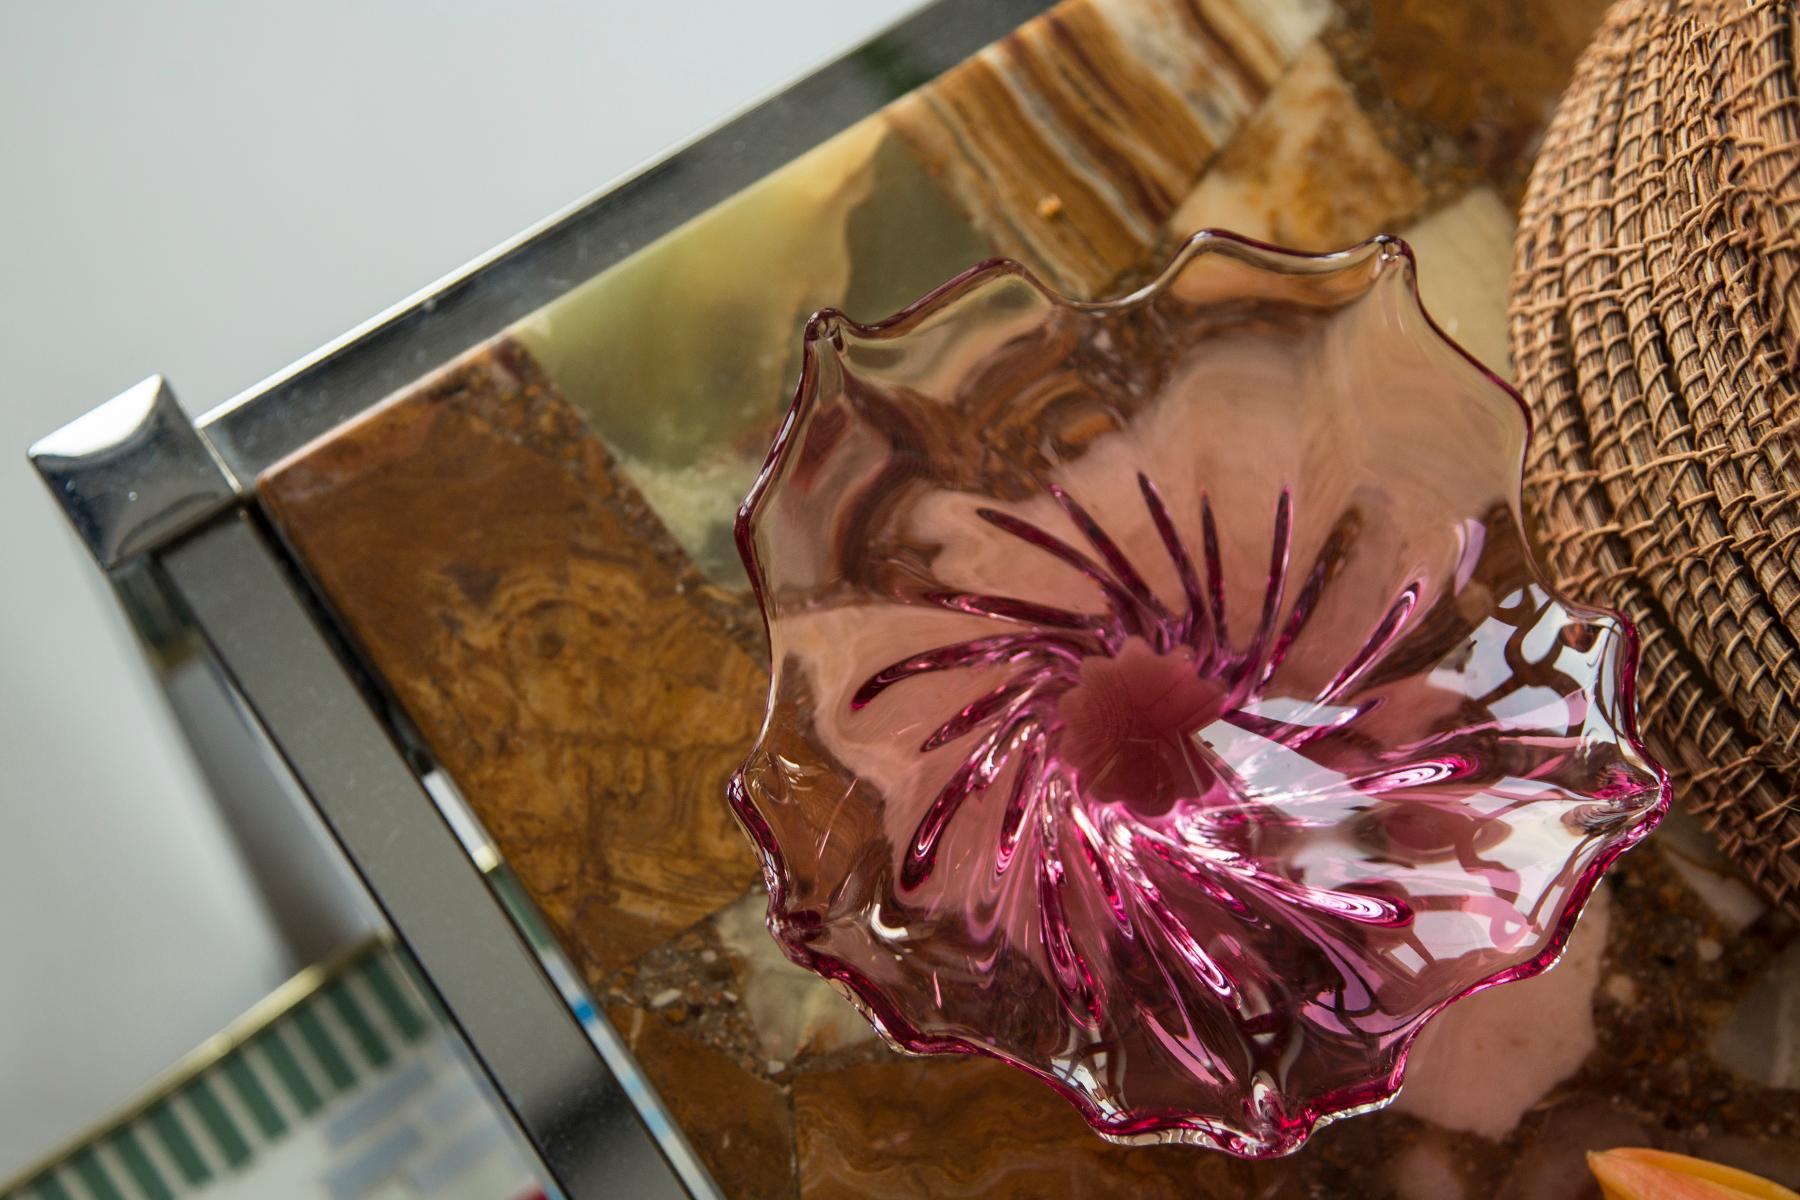 Cet élément original en verre vintage a été conçu et produit dans les années 1970 en Lombardie, en Italie. Elle est fabriquée en technique Sommerso et présente une forme facettée fantastique. La couleur vibrante rend cet article très décoratif. Cet